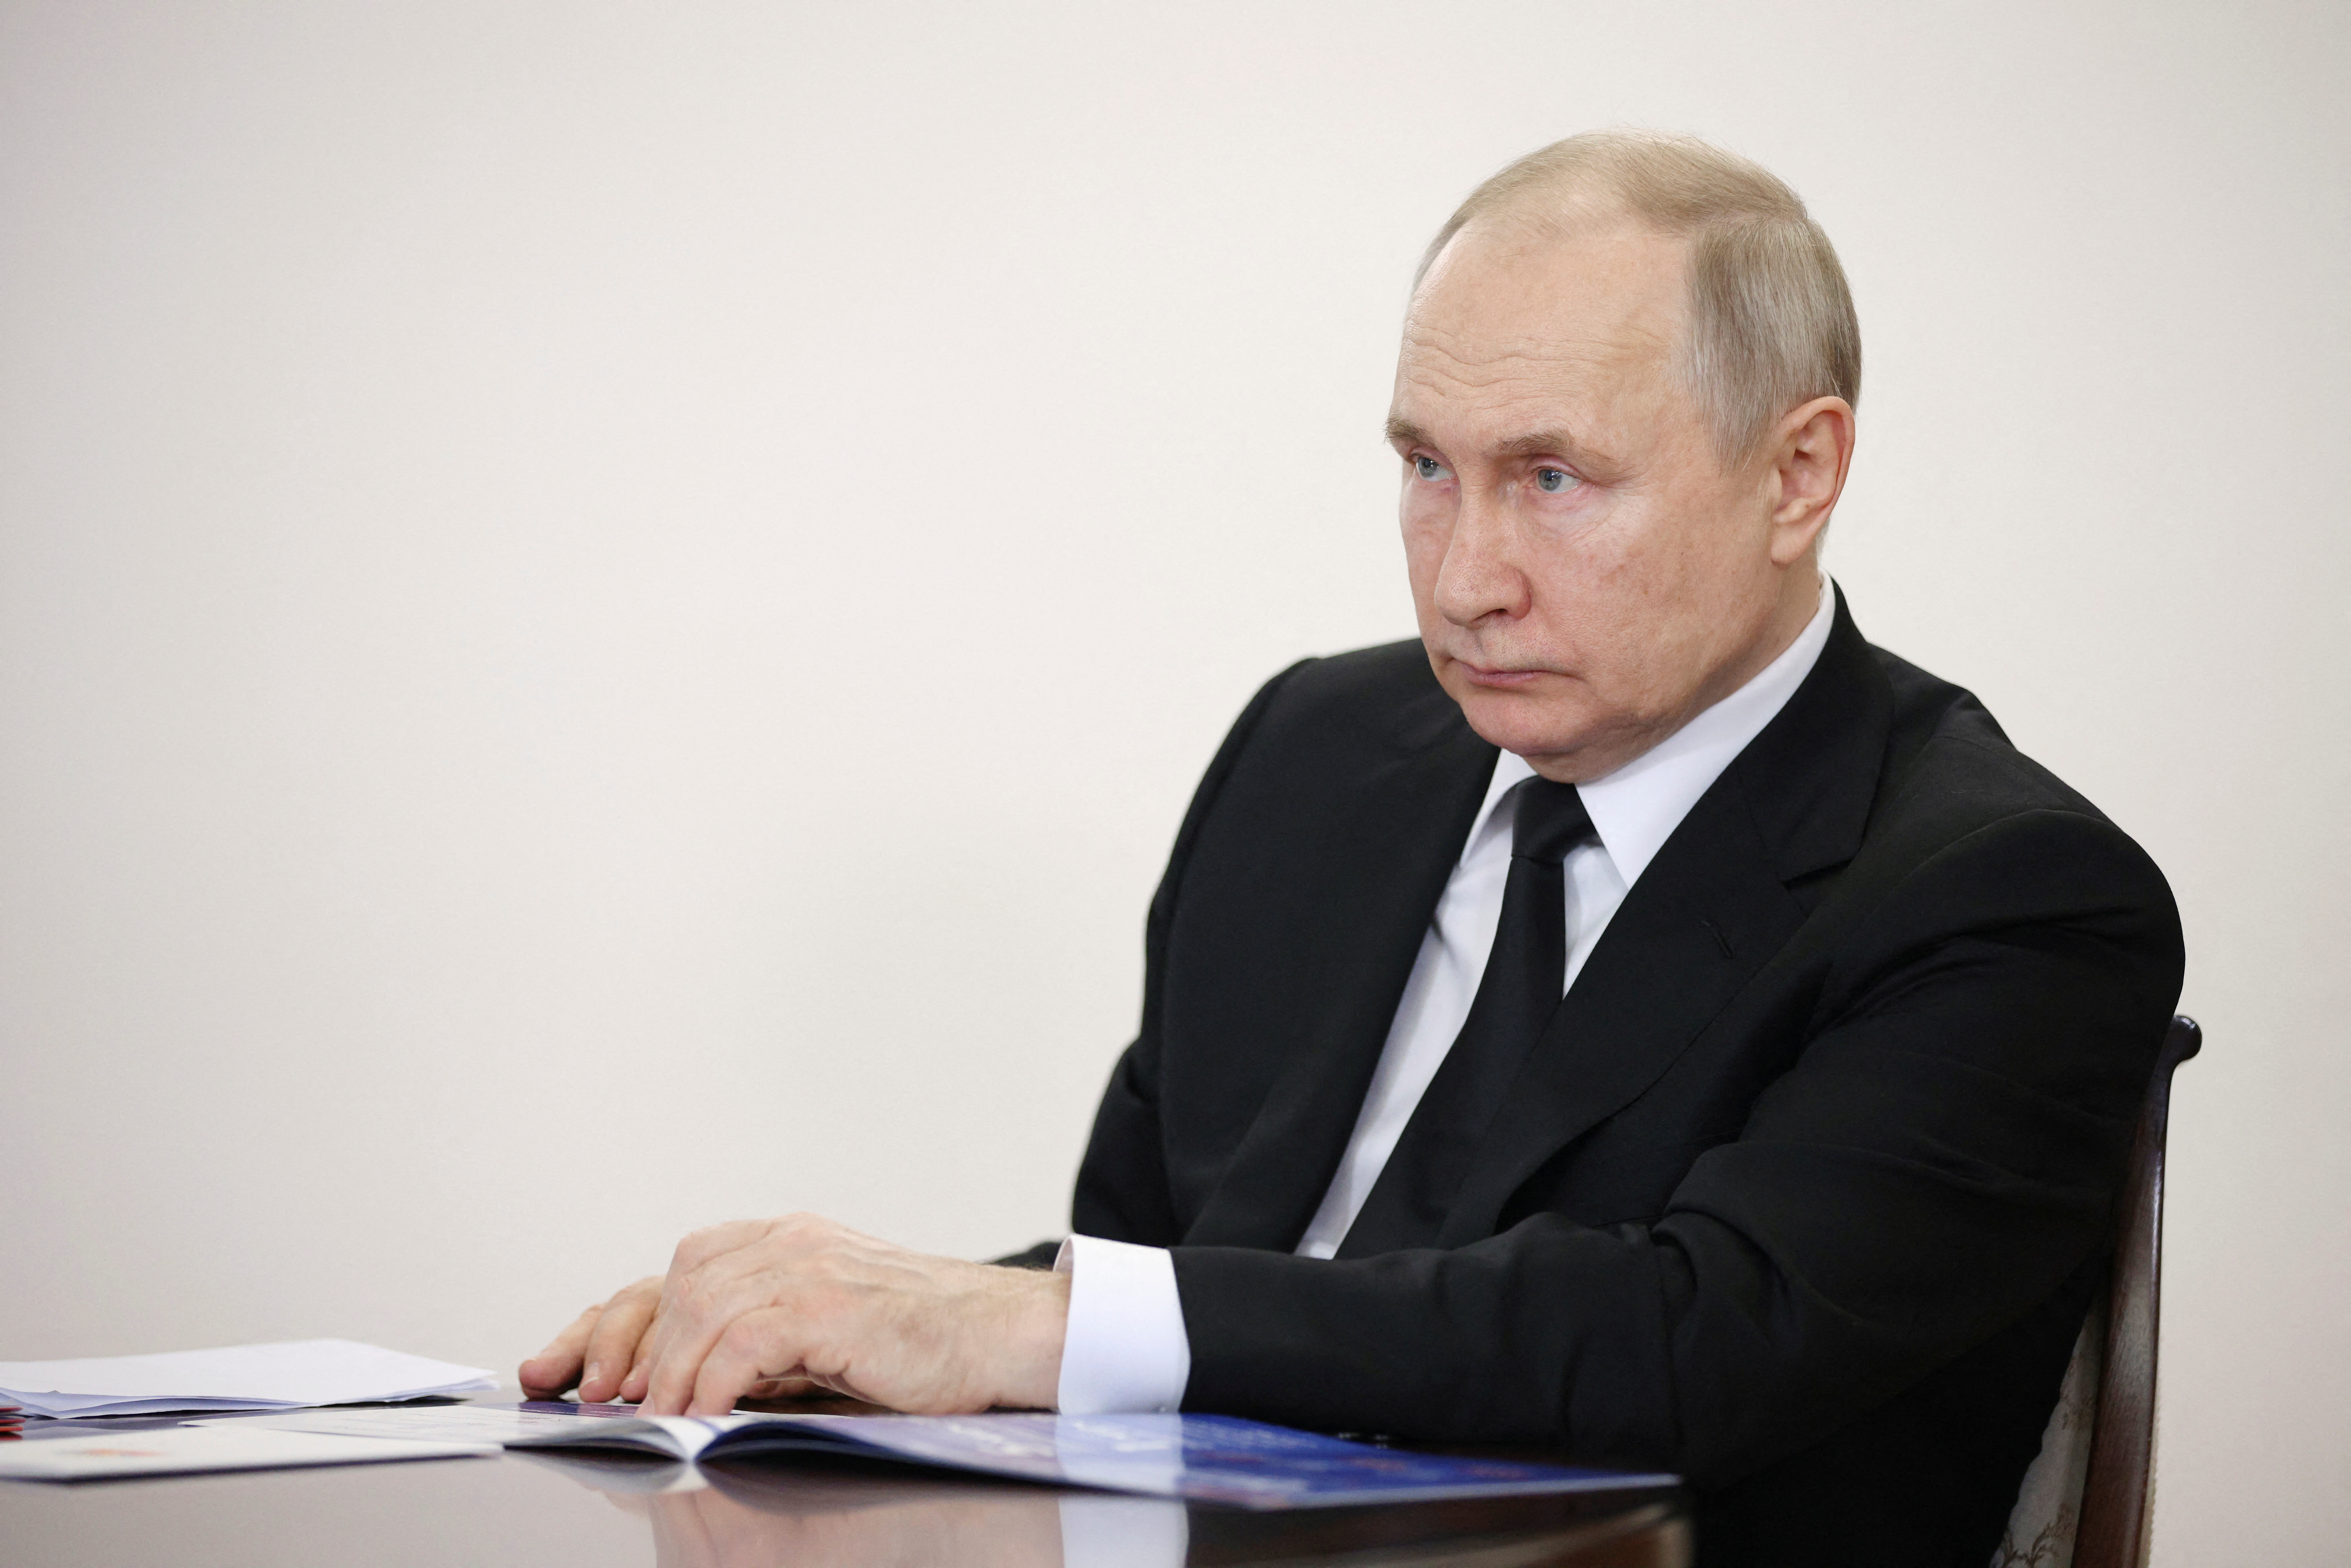 Algunos analistas apuntan que el anuncio de este miércoles fue un intento de Putin por reafirmar la primacía del Ministerio de Defensa ruso en la lucha interna por el poder en Rusia (REUTERS)